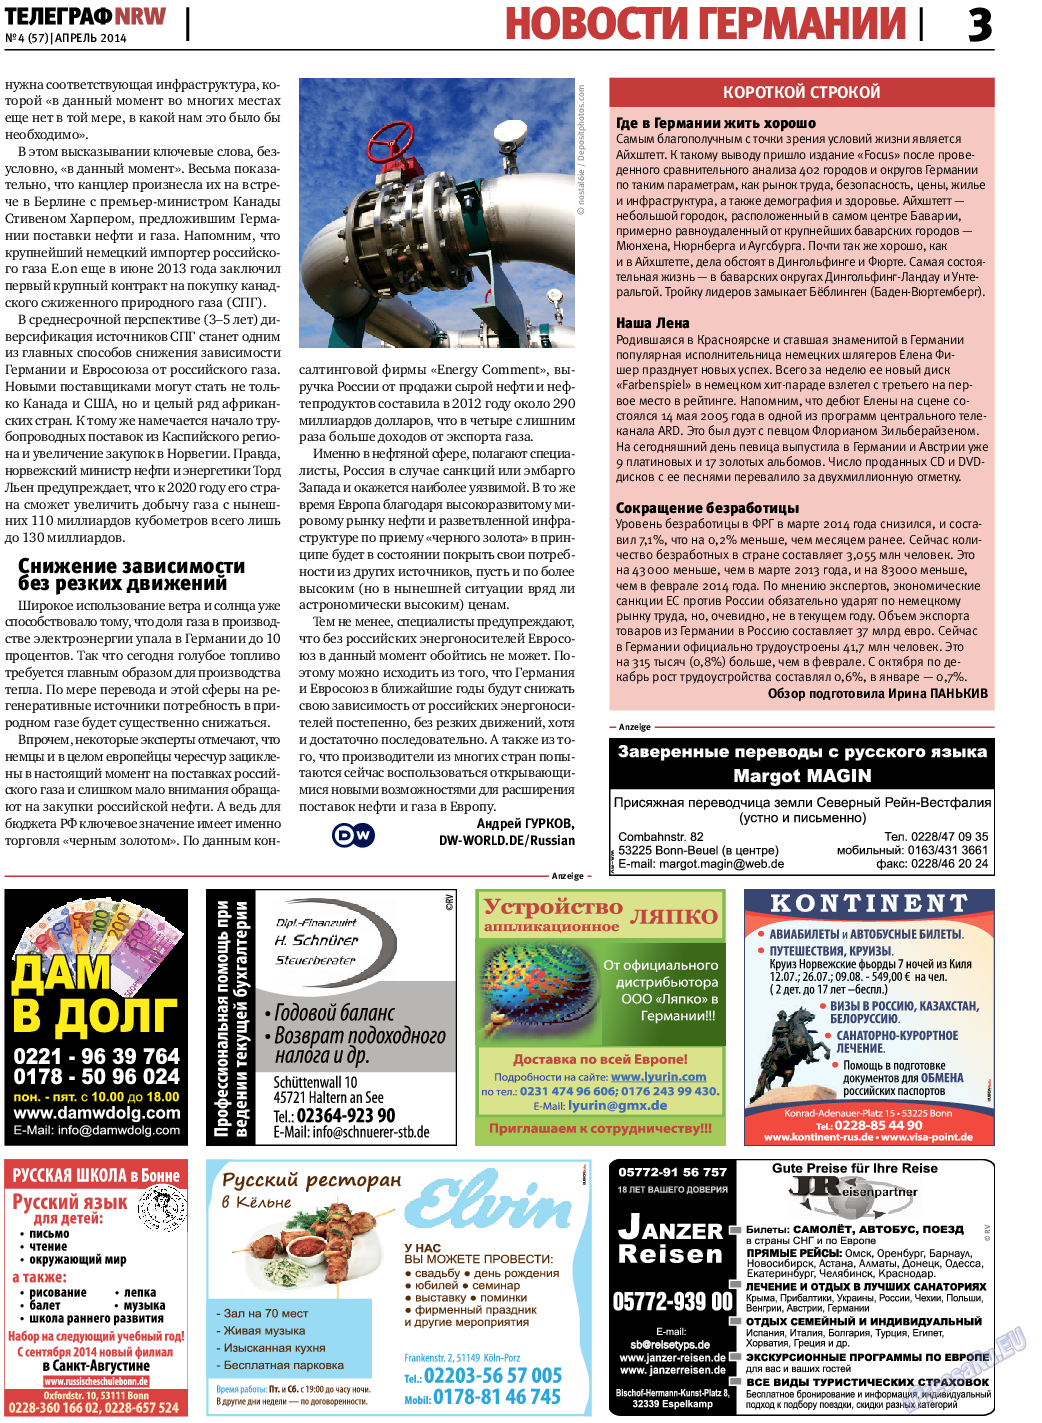 Телеграф NRW (газета). 2014 год, номер 4, стр. 3